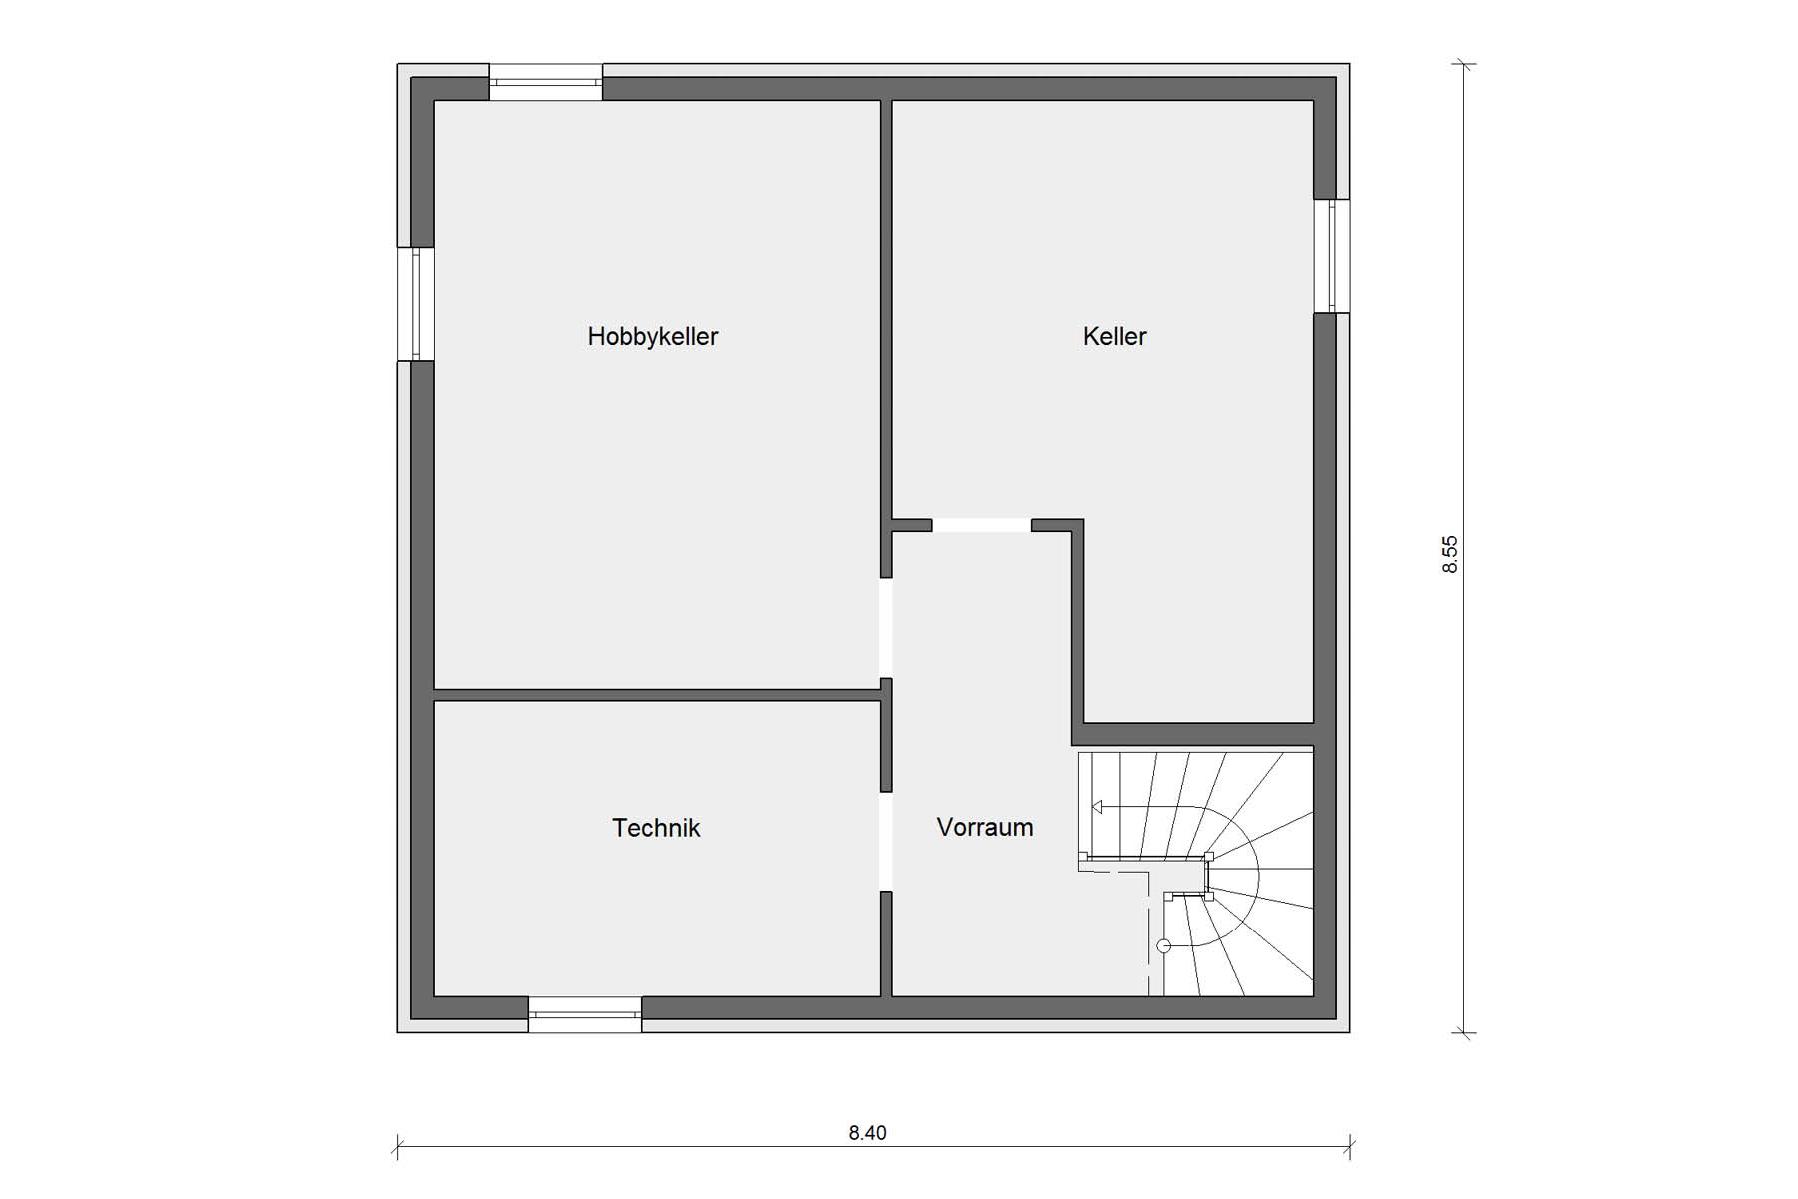 Plan d'étage à la cave Architecture de maison individuelle dans le style Bauhaus E 20-119.1